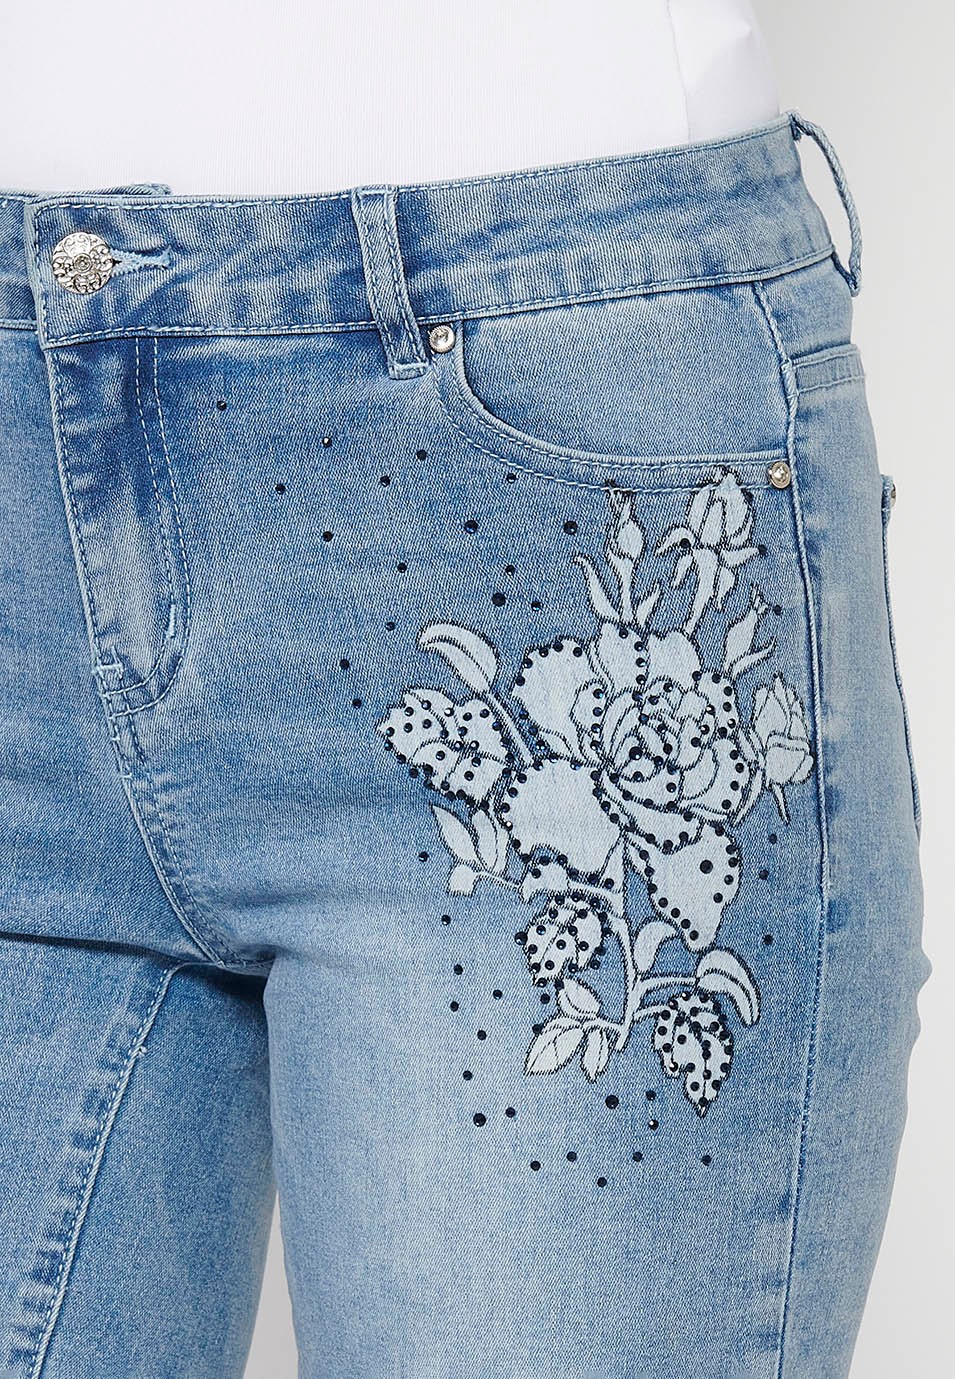 Pantalón corto, bordados florales, color azul para mujer